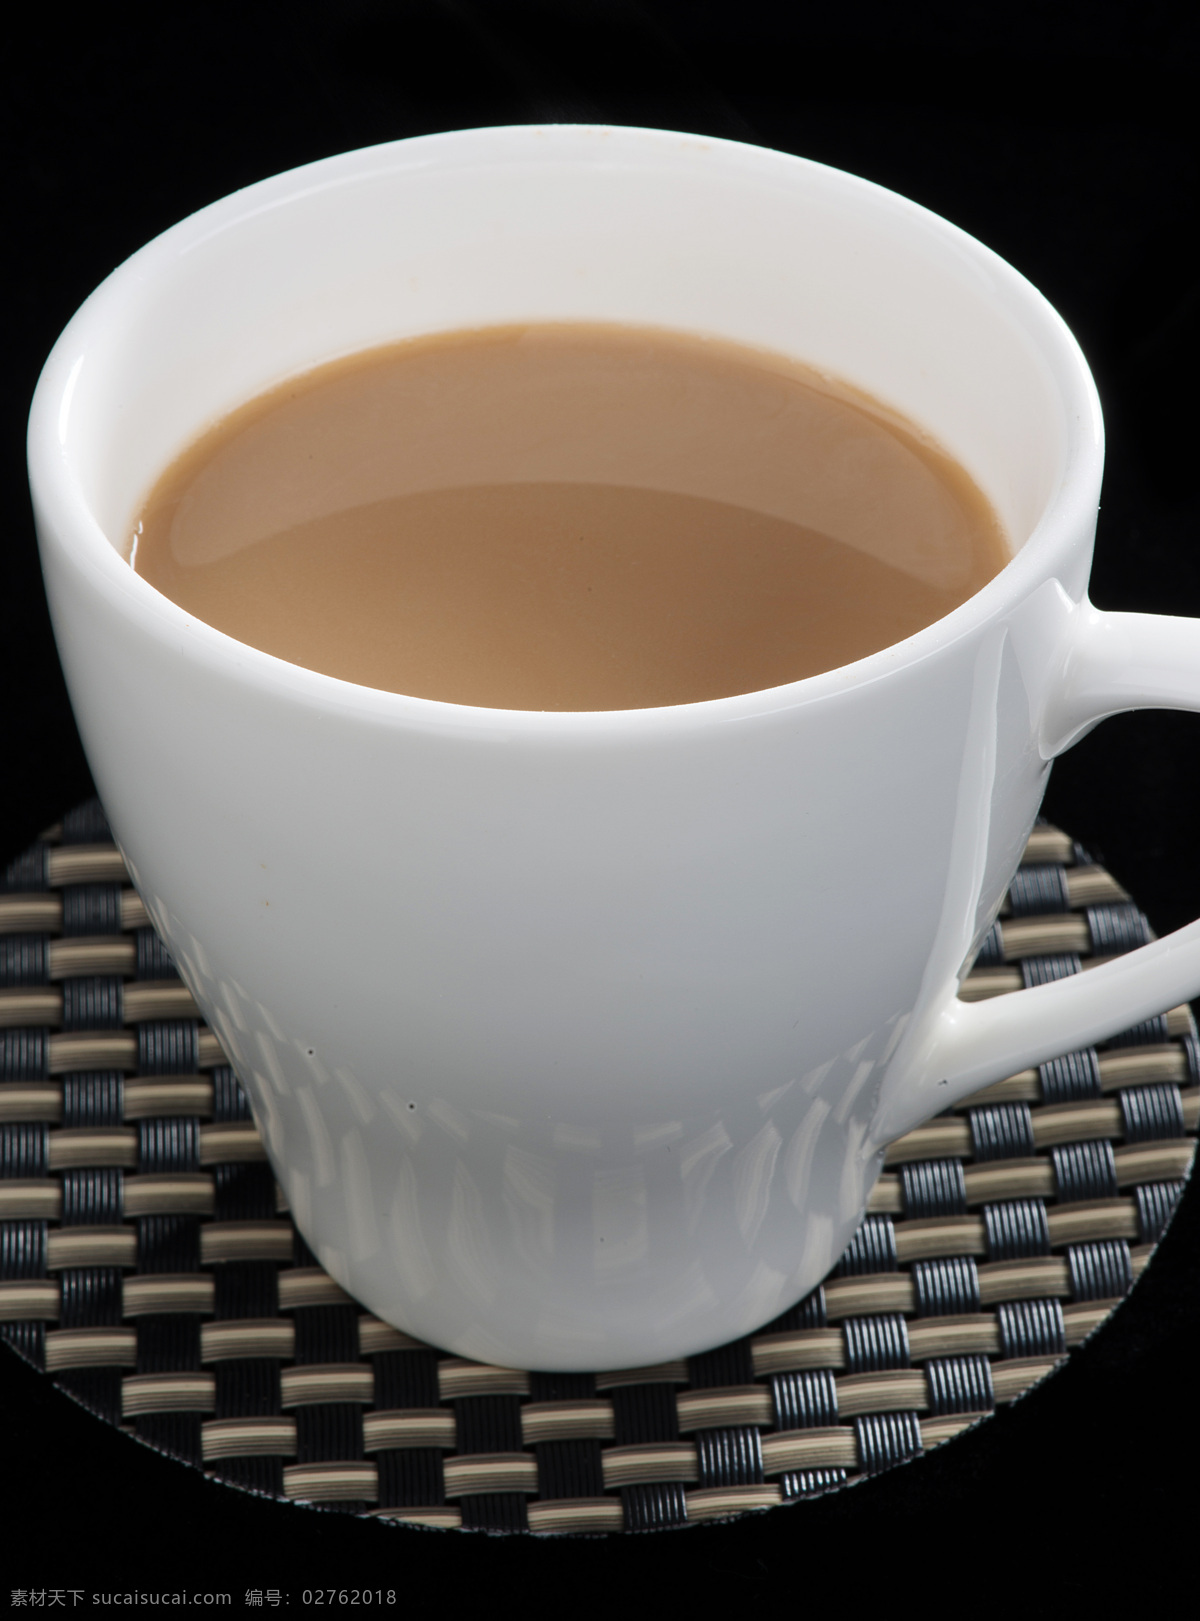 杯子 餐具厨具 餐饮美食 咖啡 咖啡杯 咖啡器皿 拿铁 铁 丝滑拿铁 拿铁咖啡 咖啡垫 精致咖啡杯 精美咖啡杯 饮料酒水 矢量图 日常生活